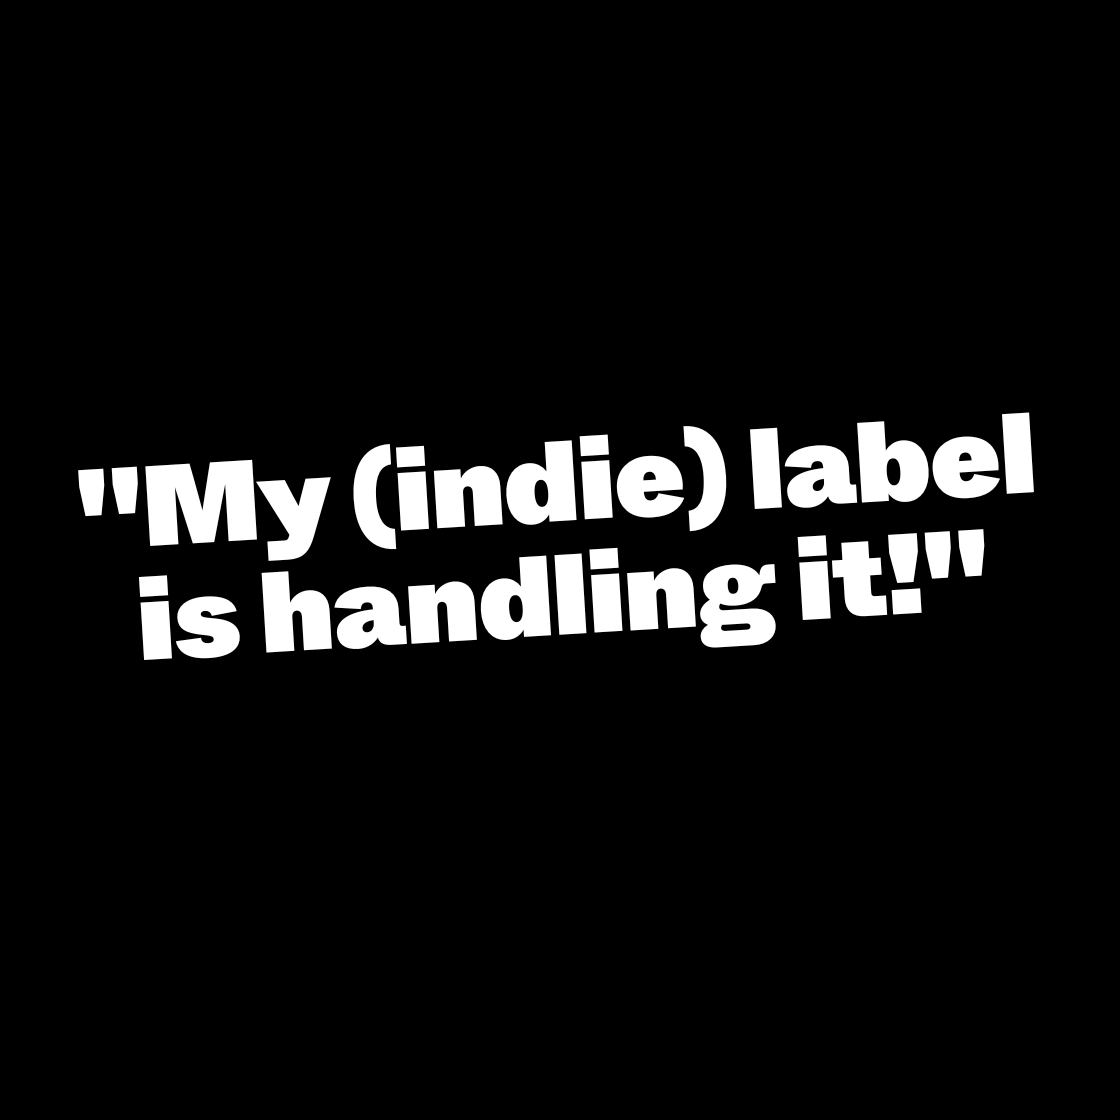 “My (Indie) label is handling it!”